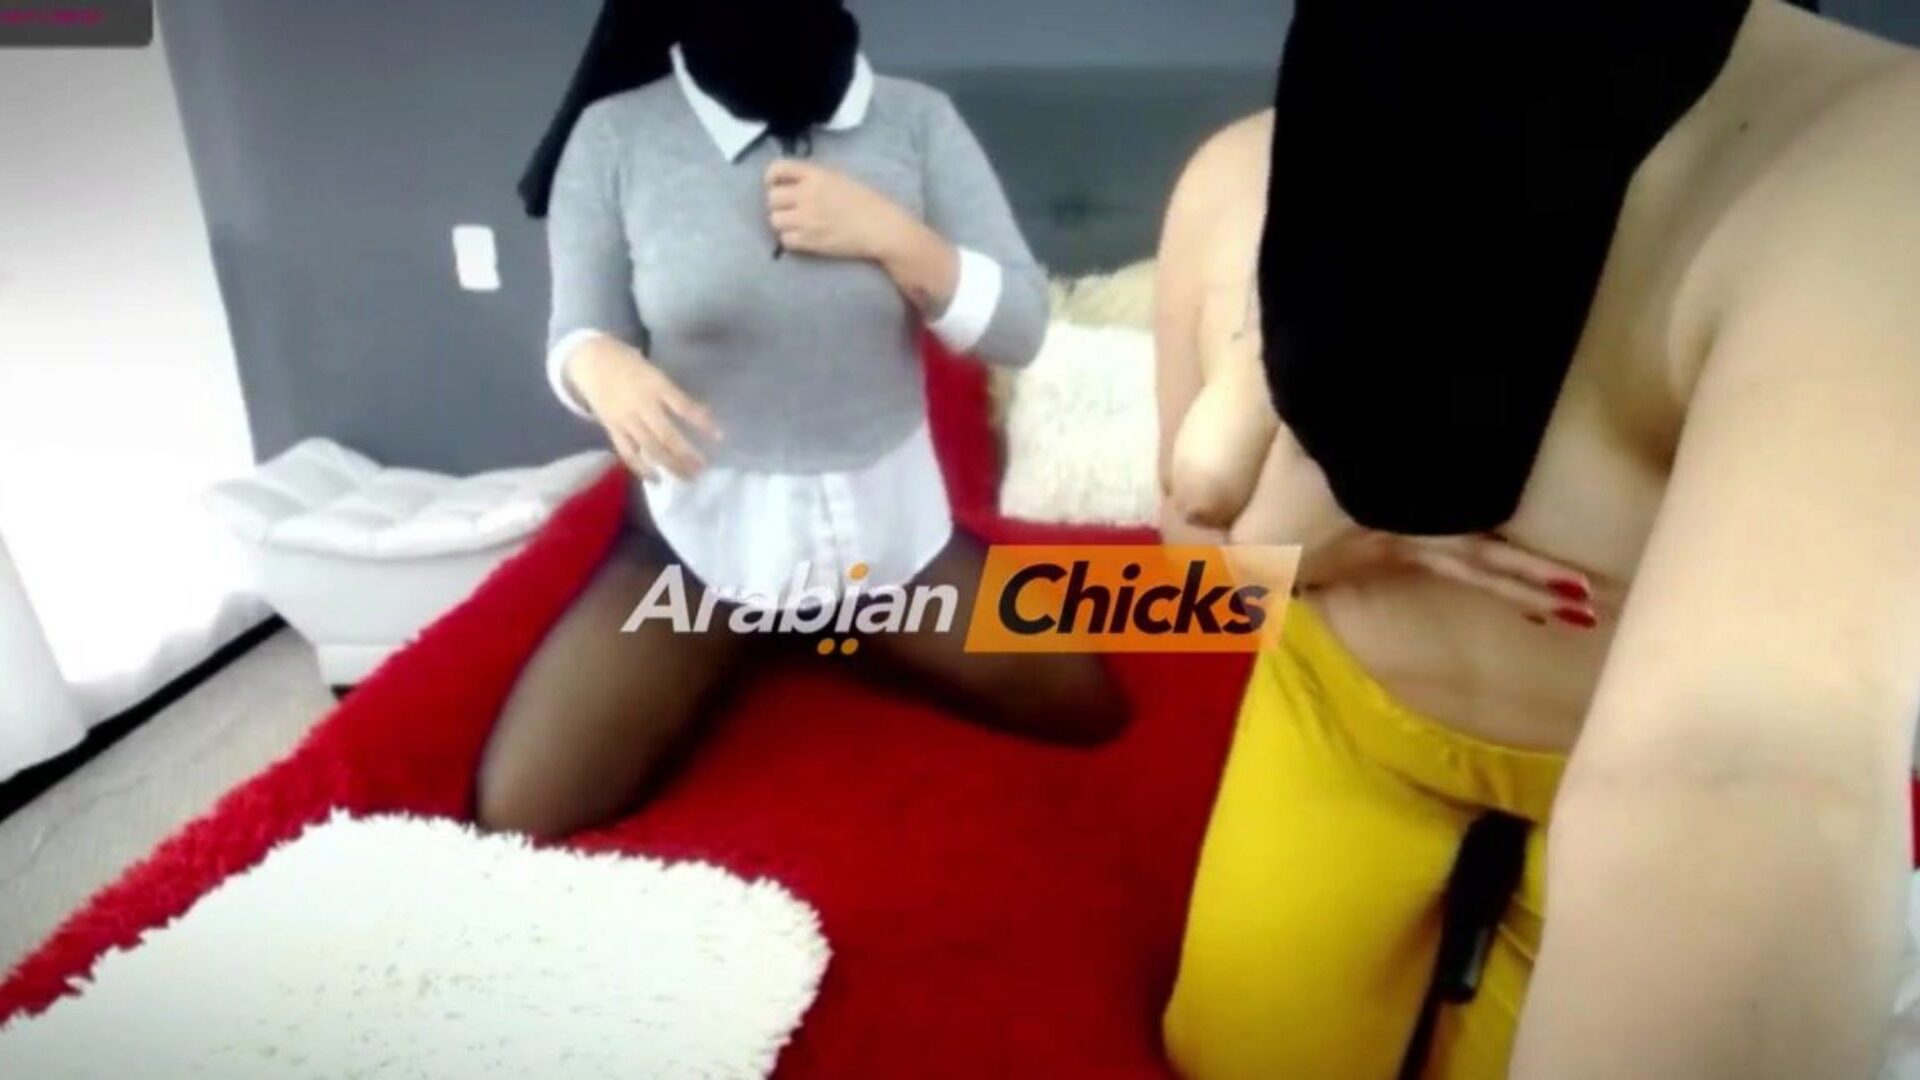 Arabianchicks web kamerasında 2 Arap lezbiyen başörtüsü: porno 93 xhamster'da arabianchicks film sahnesinde web kamerasında iki Arap lezbiyen başörtüsü izle - herkes için ücretsiz lezbiyen xxx tube ve yeni arap hd porno tube videolarının nihai partisi